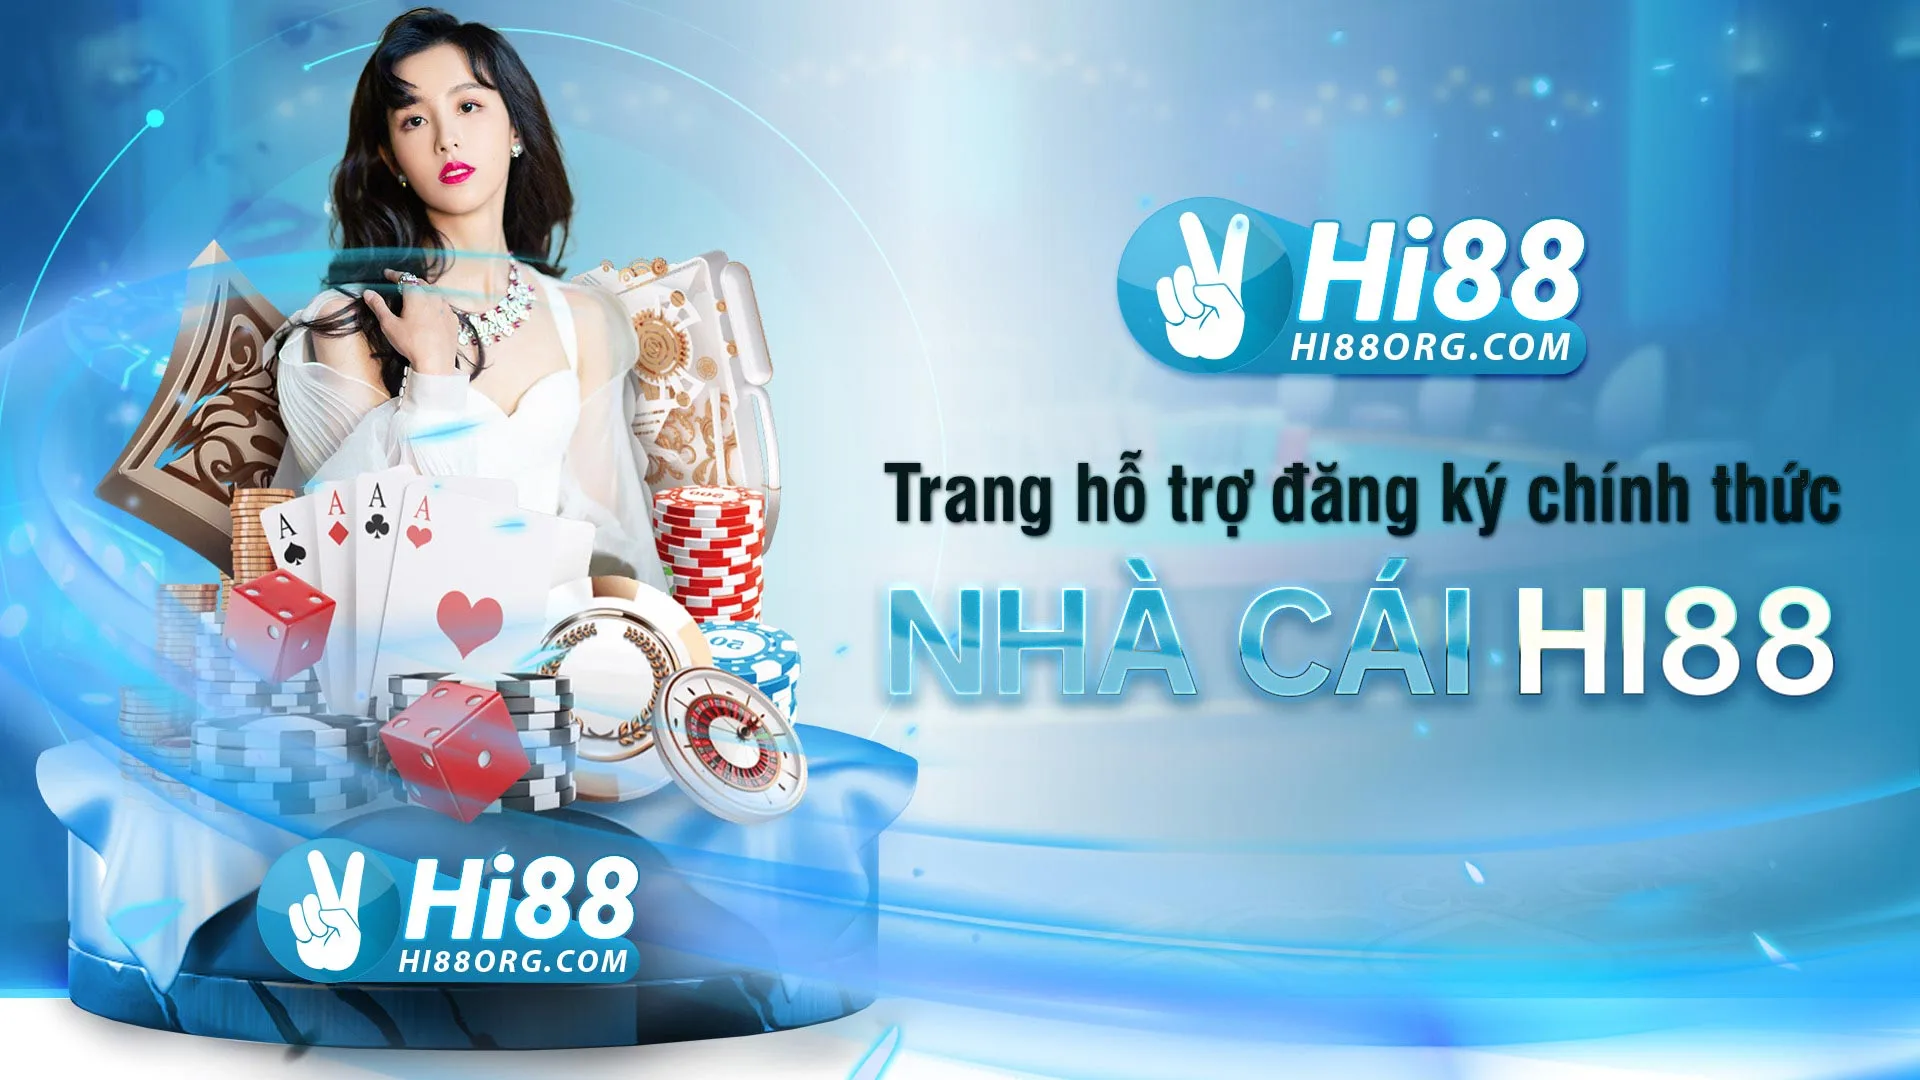 Hi88 Club – Nhà cái chơi casino uy tín hàng đầu Việt Nam